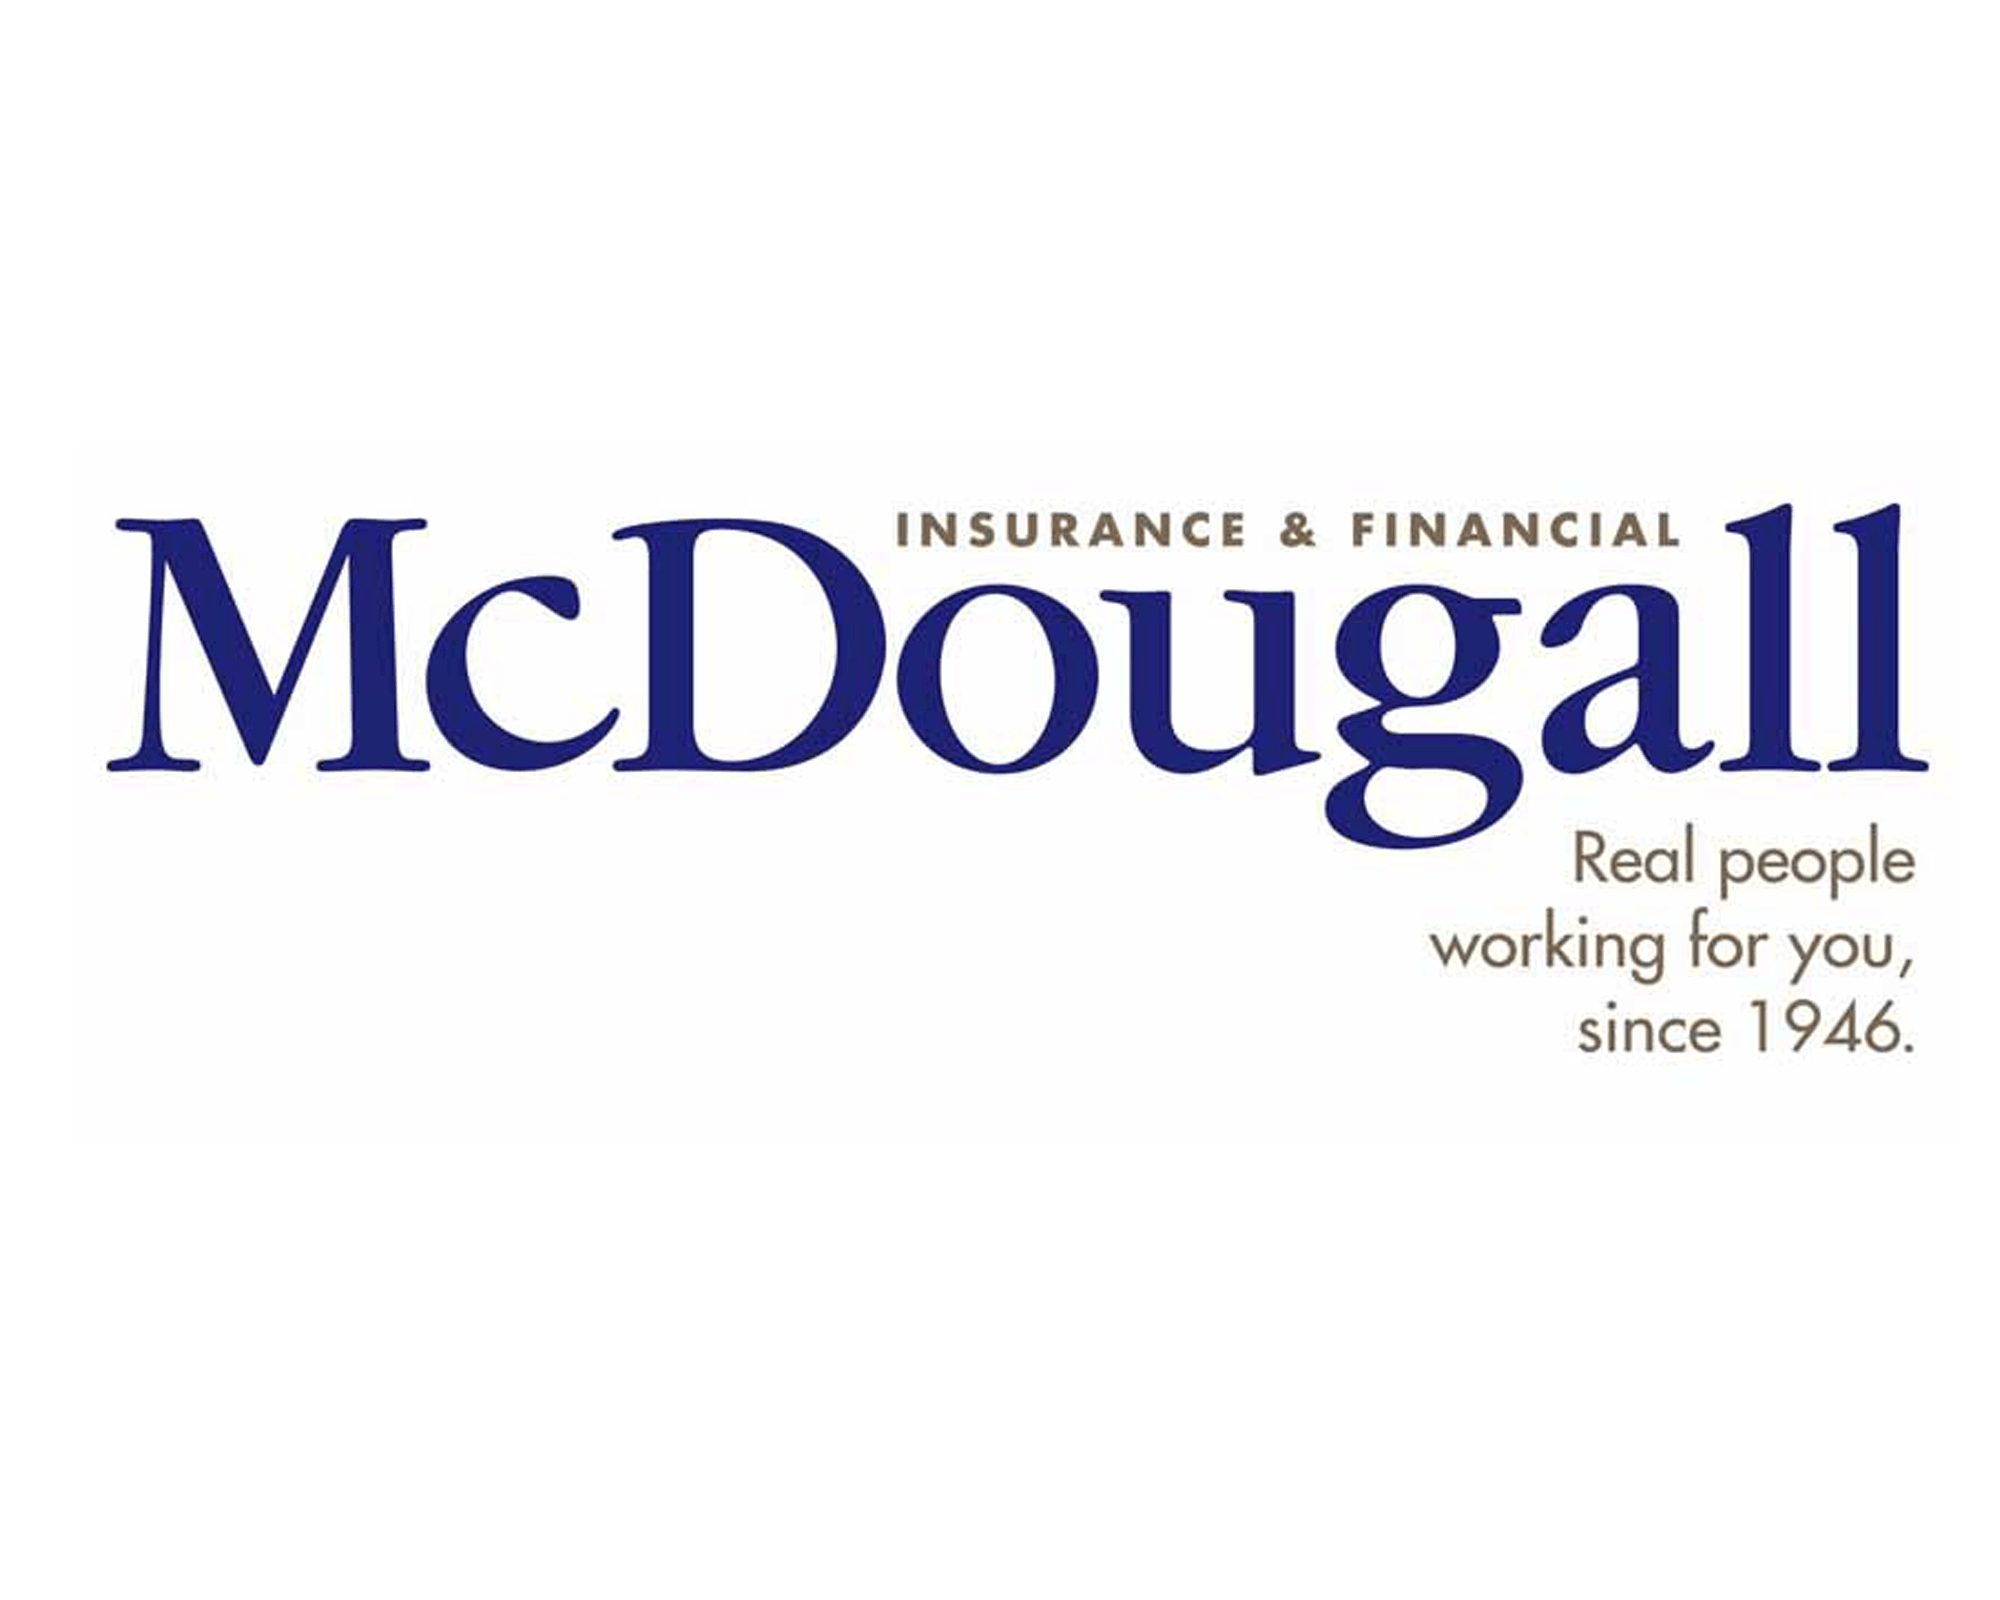 McDougall Insurance logo